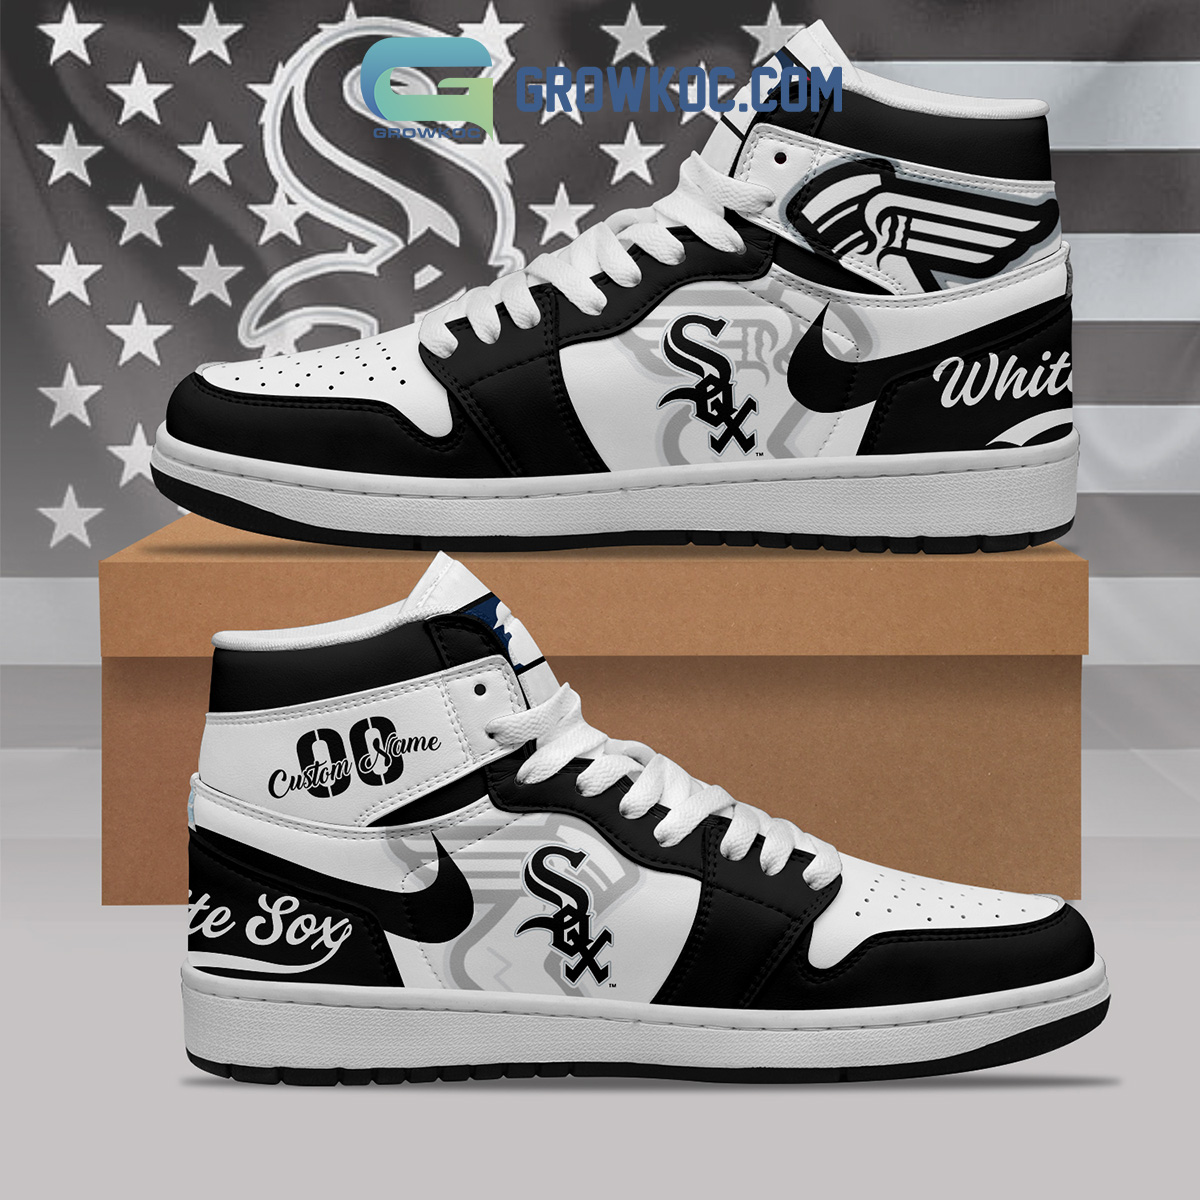 Mlb Chicago White Sox Air Jordan 13 Custom Shoes Sneaker V1